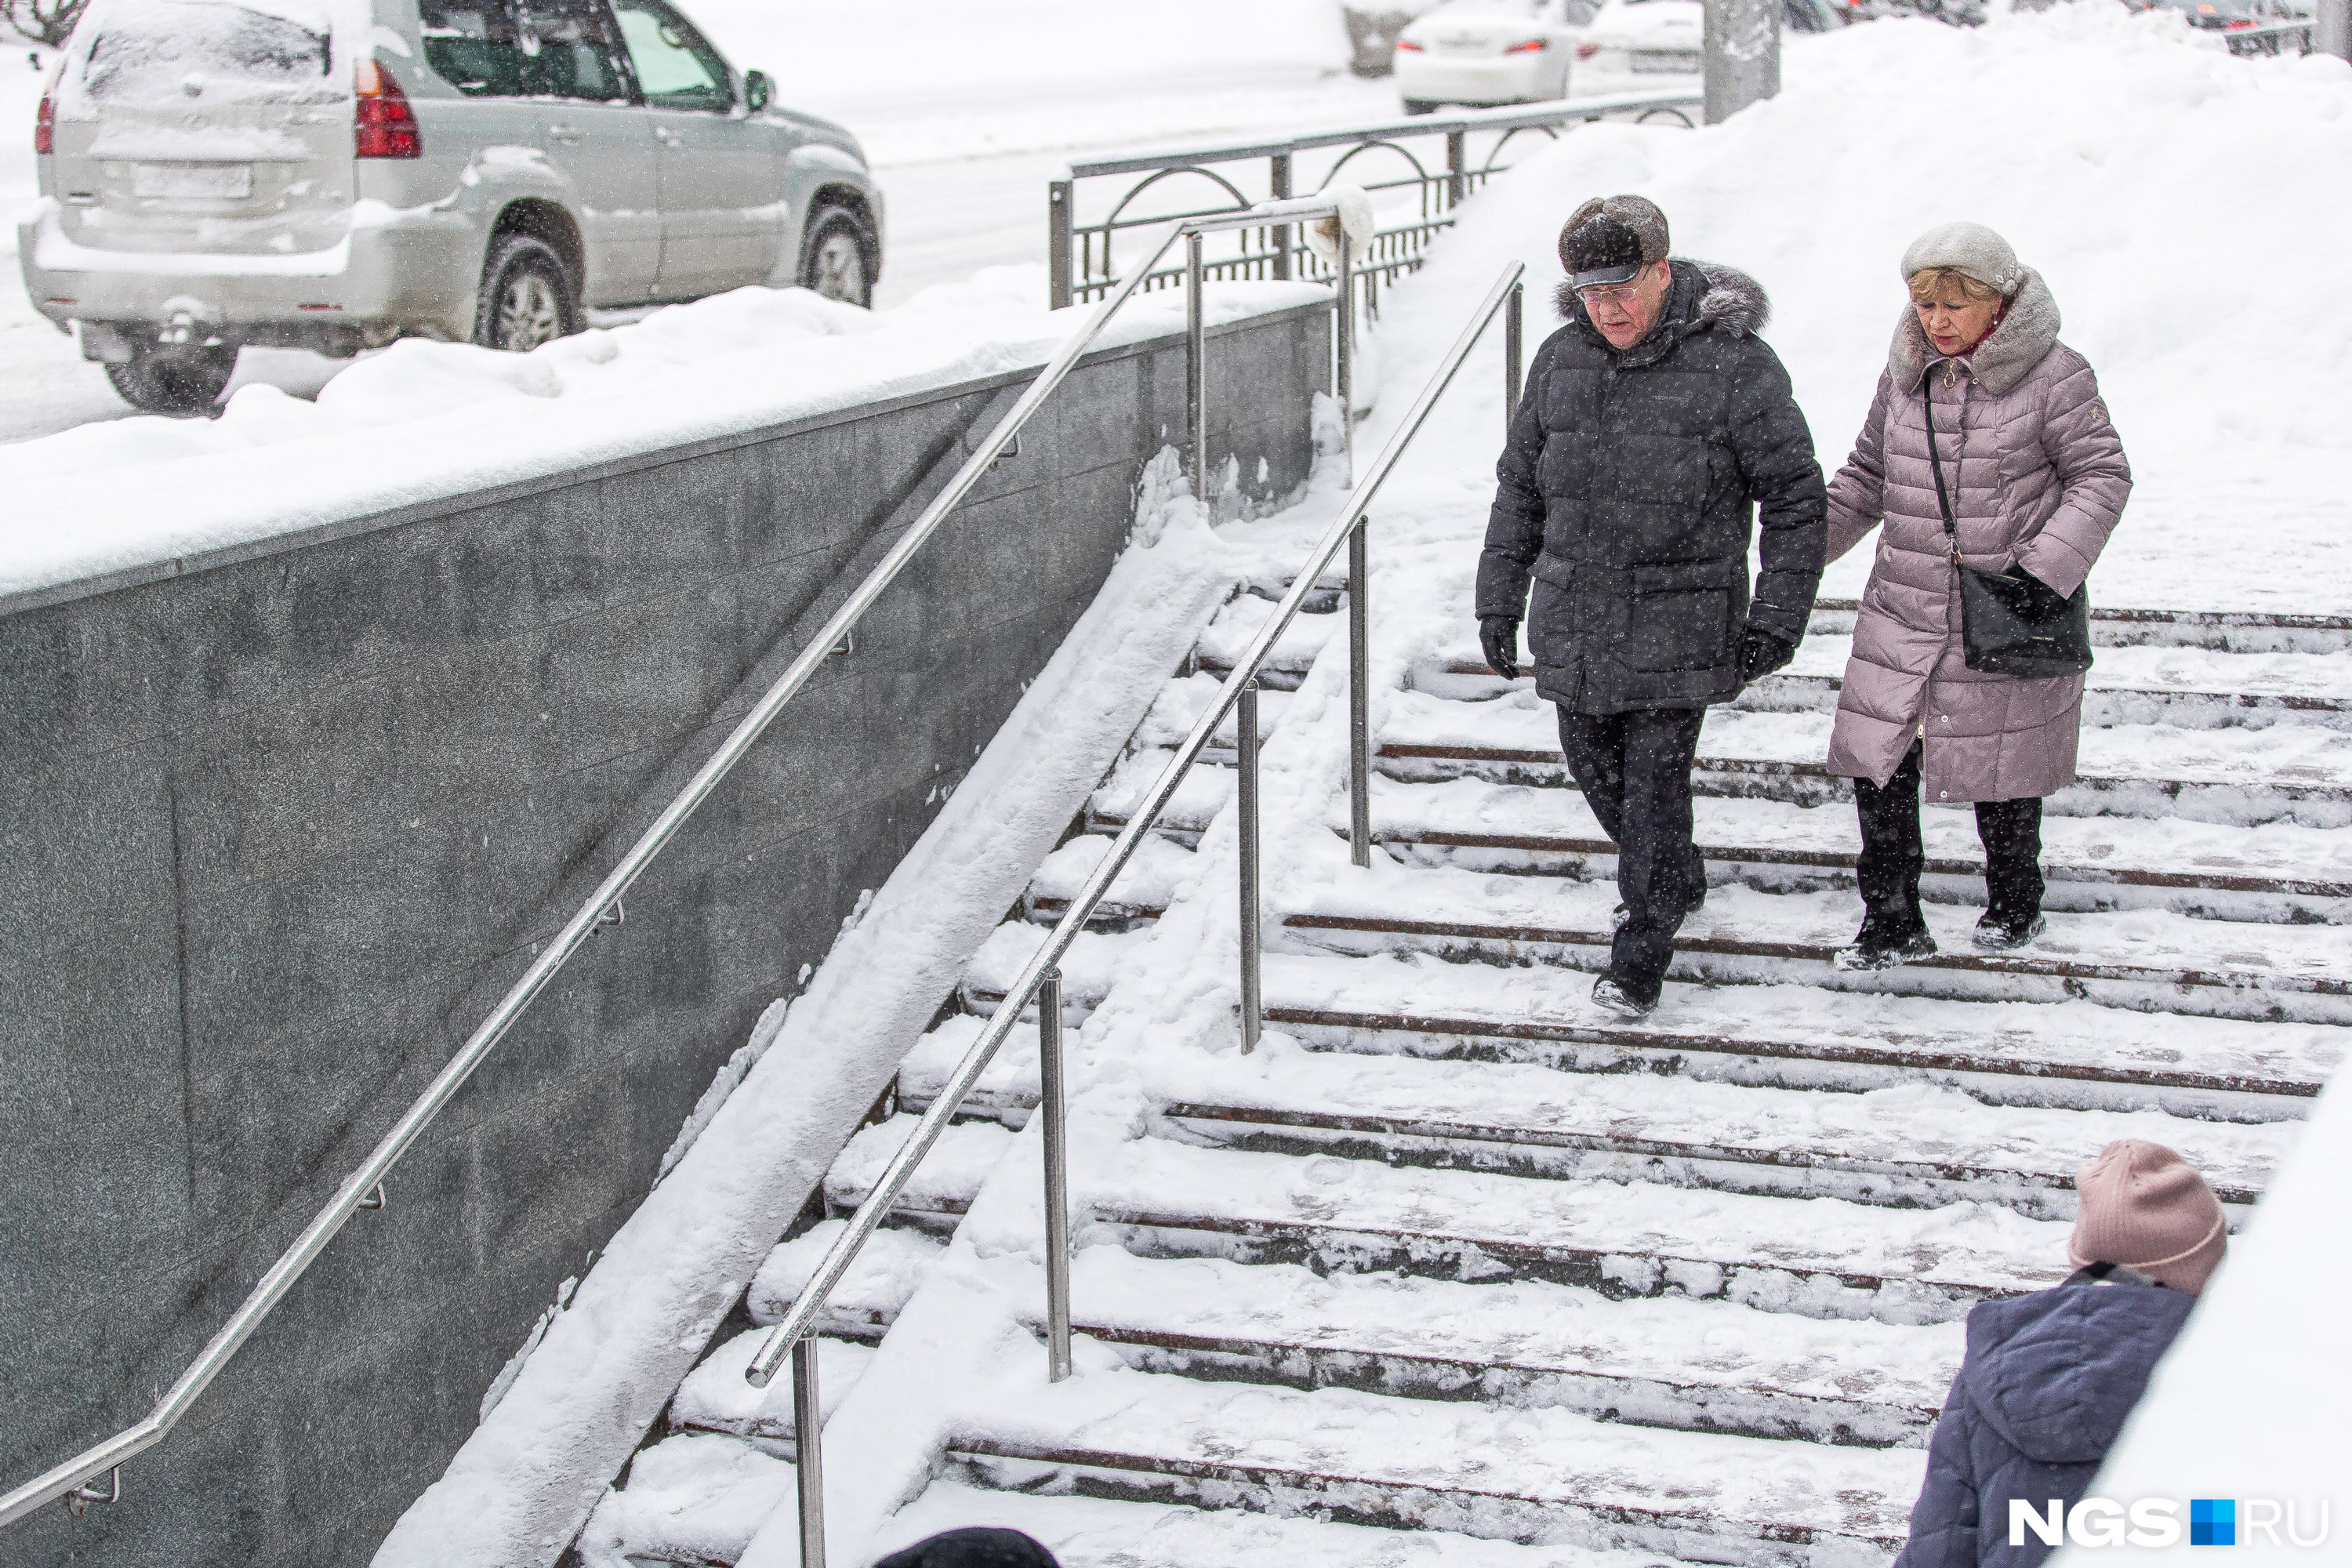 Лестницы плохо отчистили от снега, пешеходам приходится идти аккуратно, чтобы не скатиться вниз